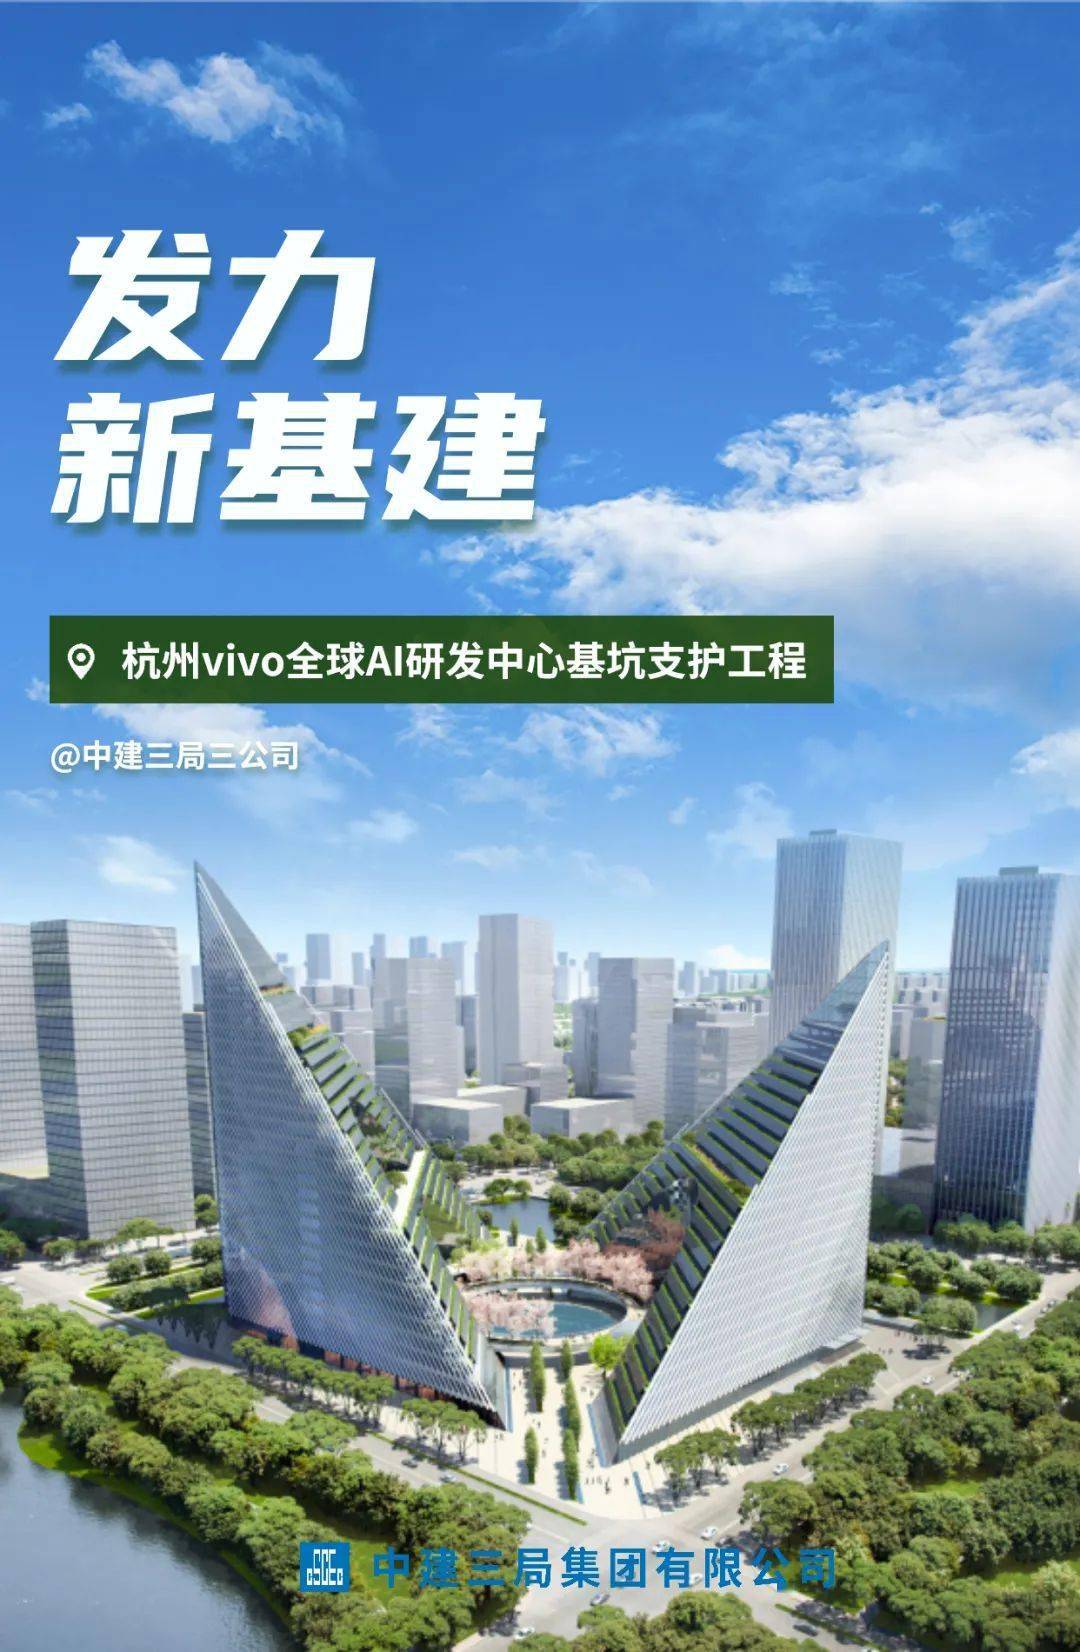 深圳 5G 网络大厦：未来科技发展的前瞻性建筑  第6张